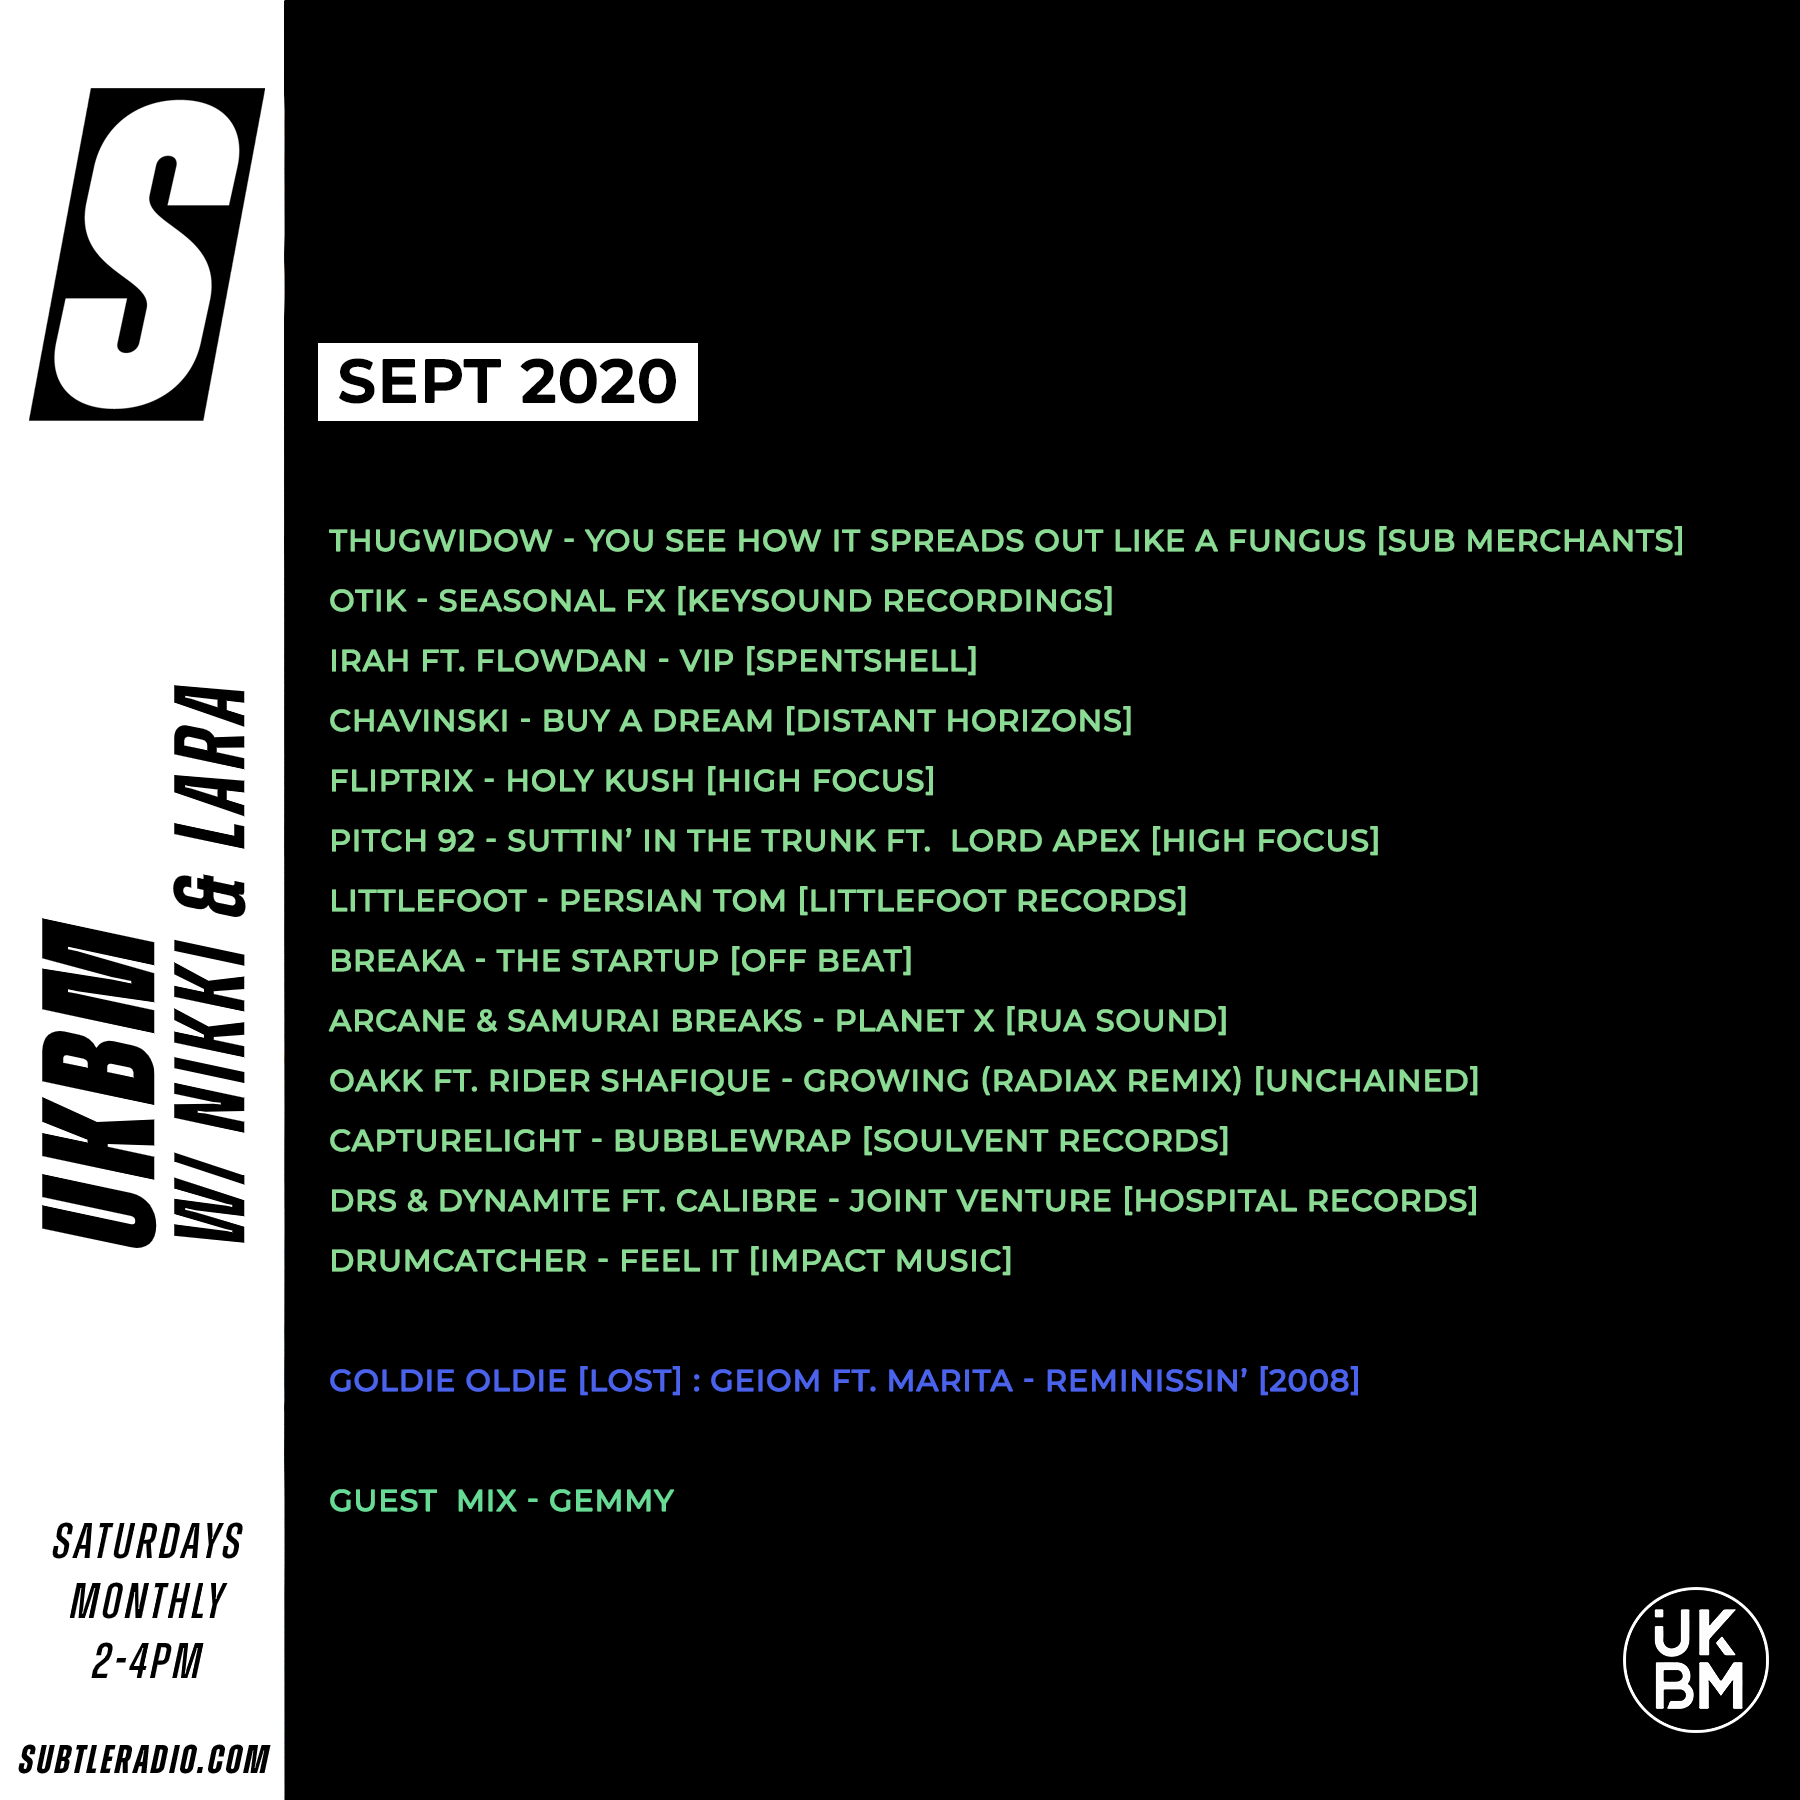 UKBM-Radio-Subtle-Sept